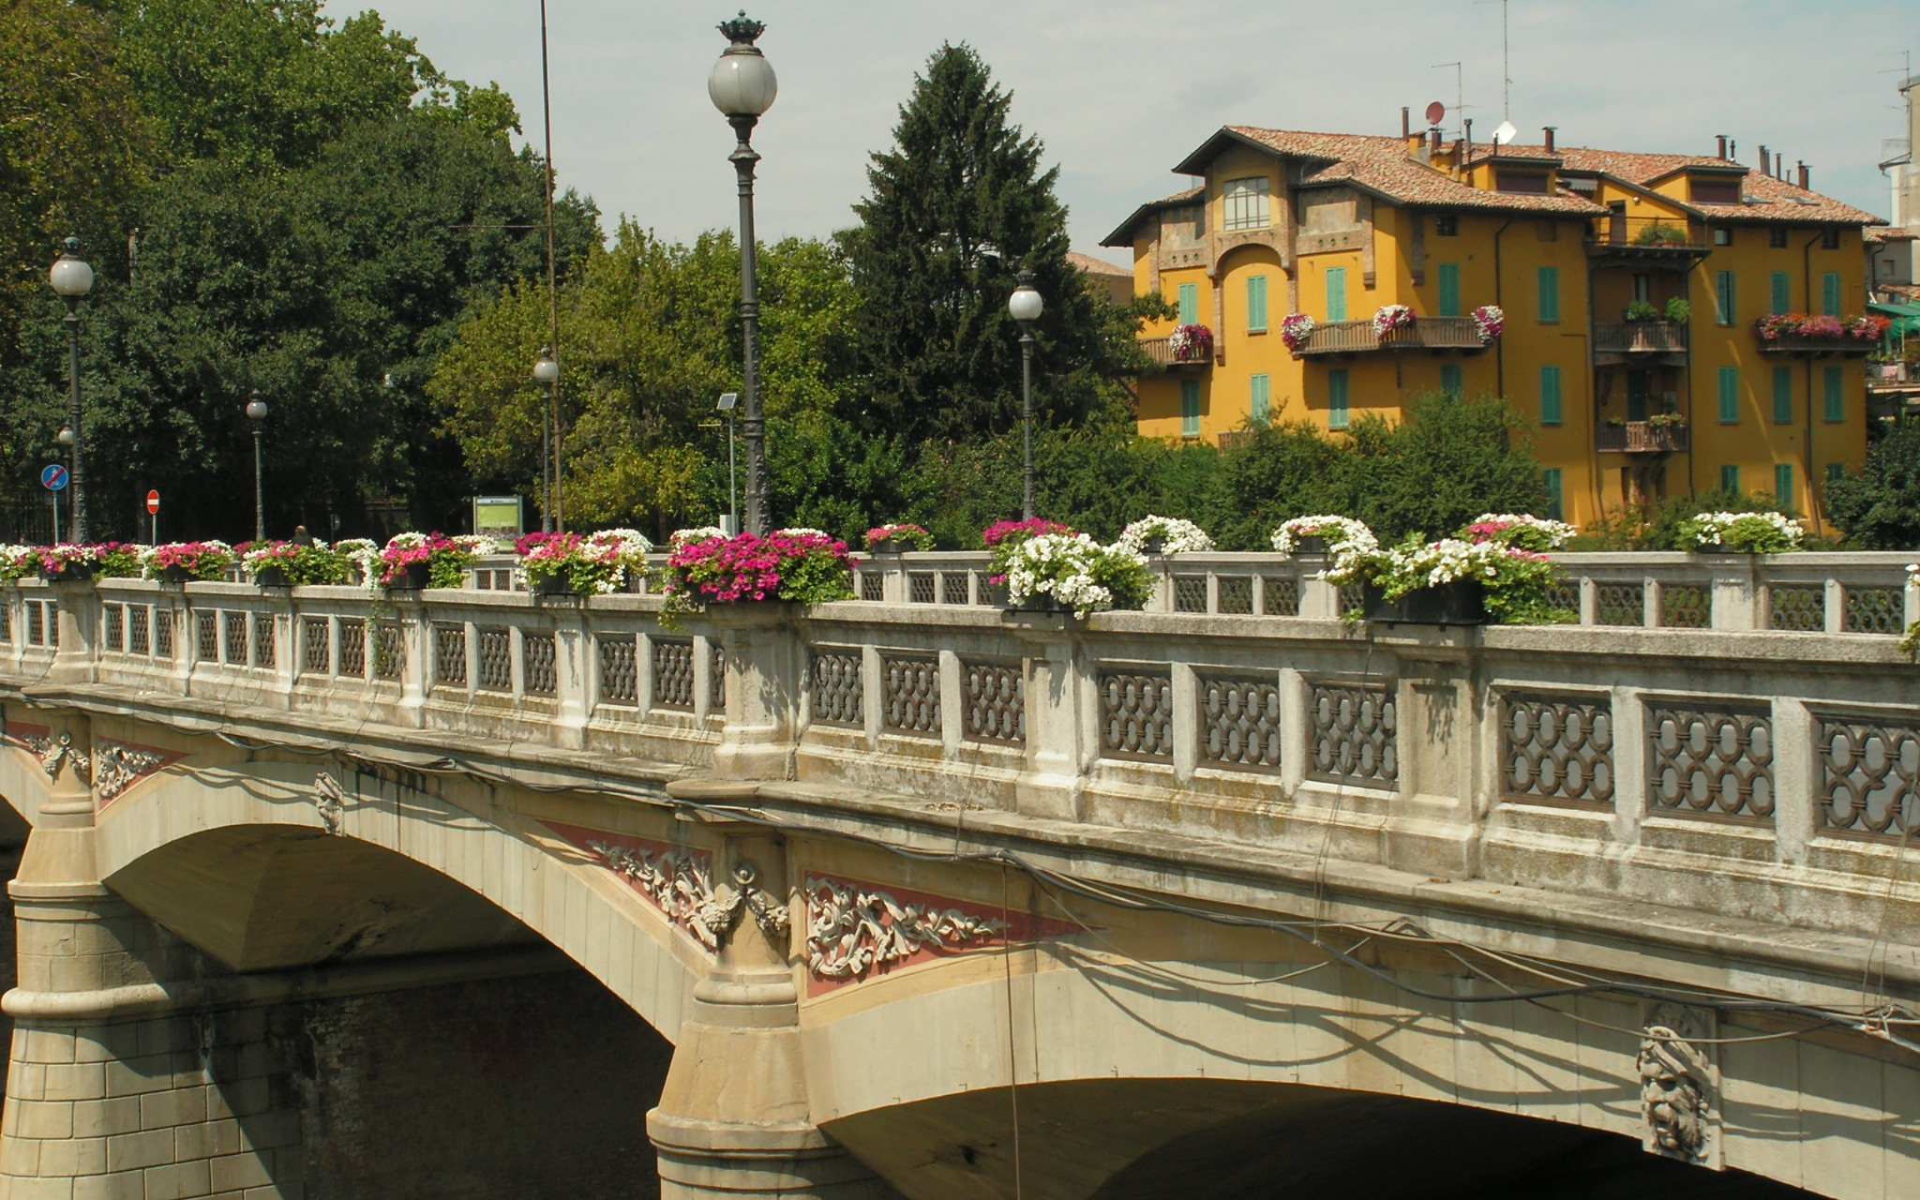 Мост в Парме, Италия